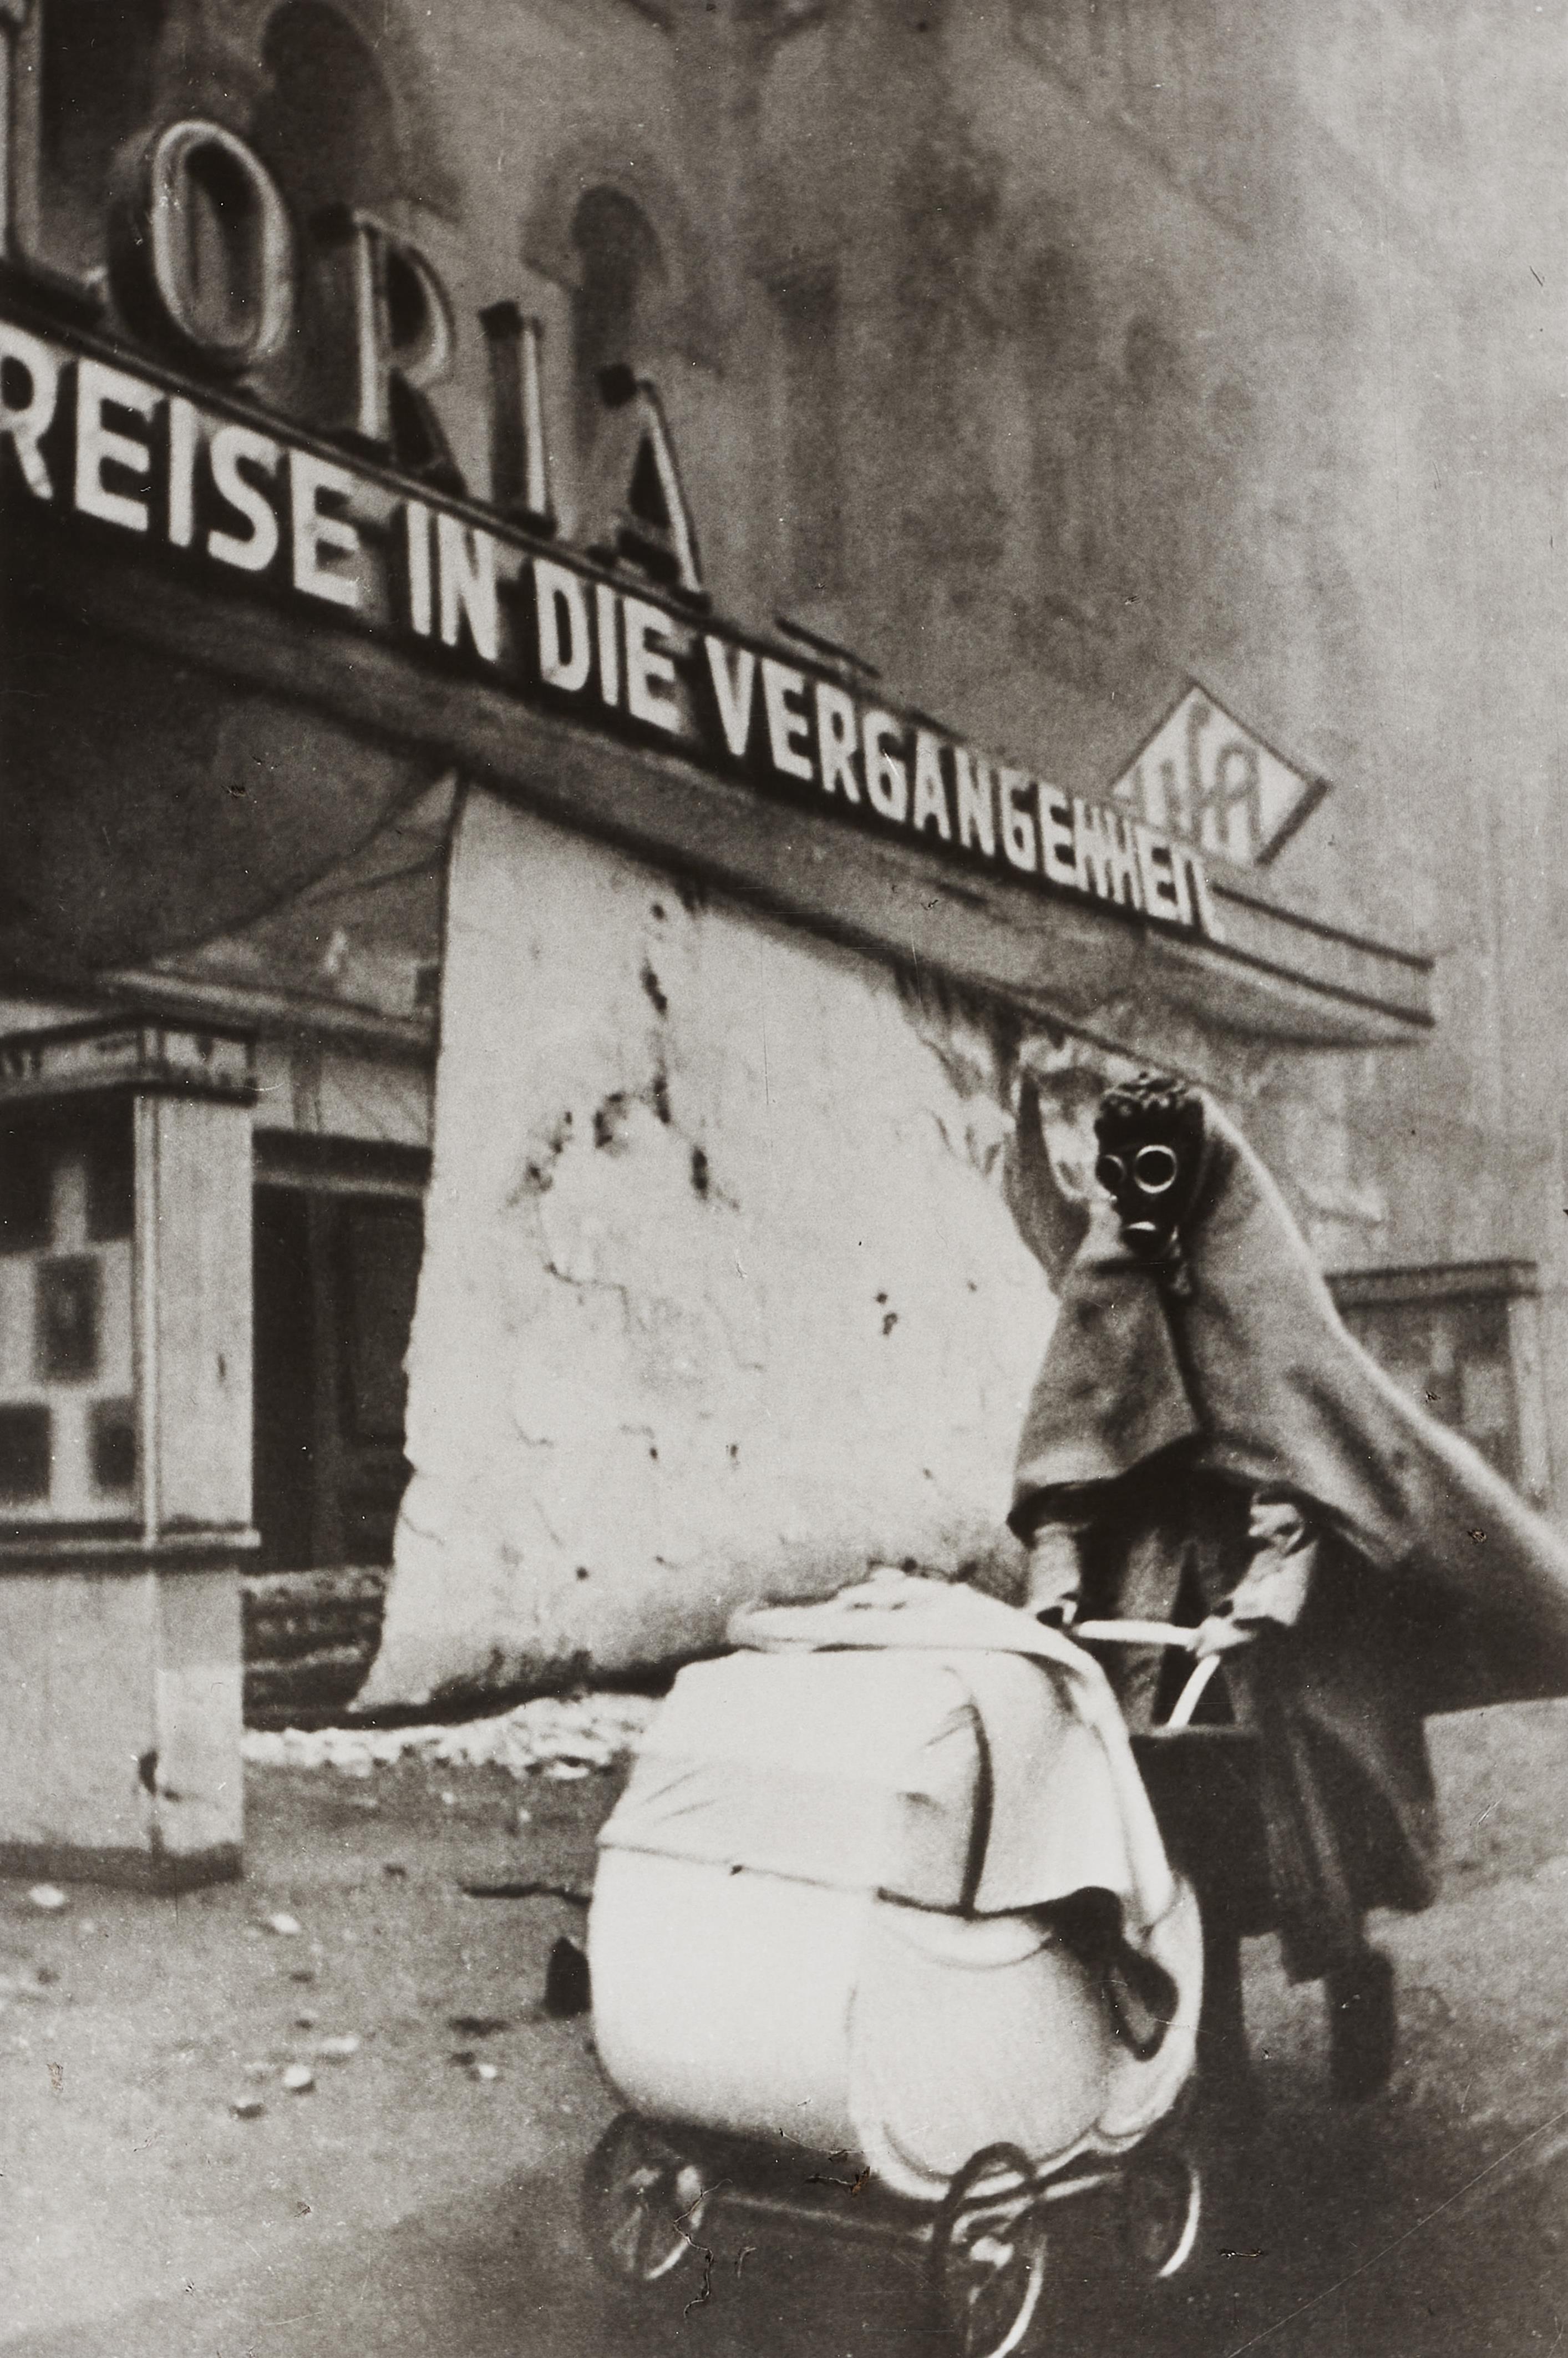 Wolf Strache - "Reise in die Vergangenheit", Kurfürstendamm, Berlin - image-1